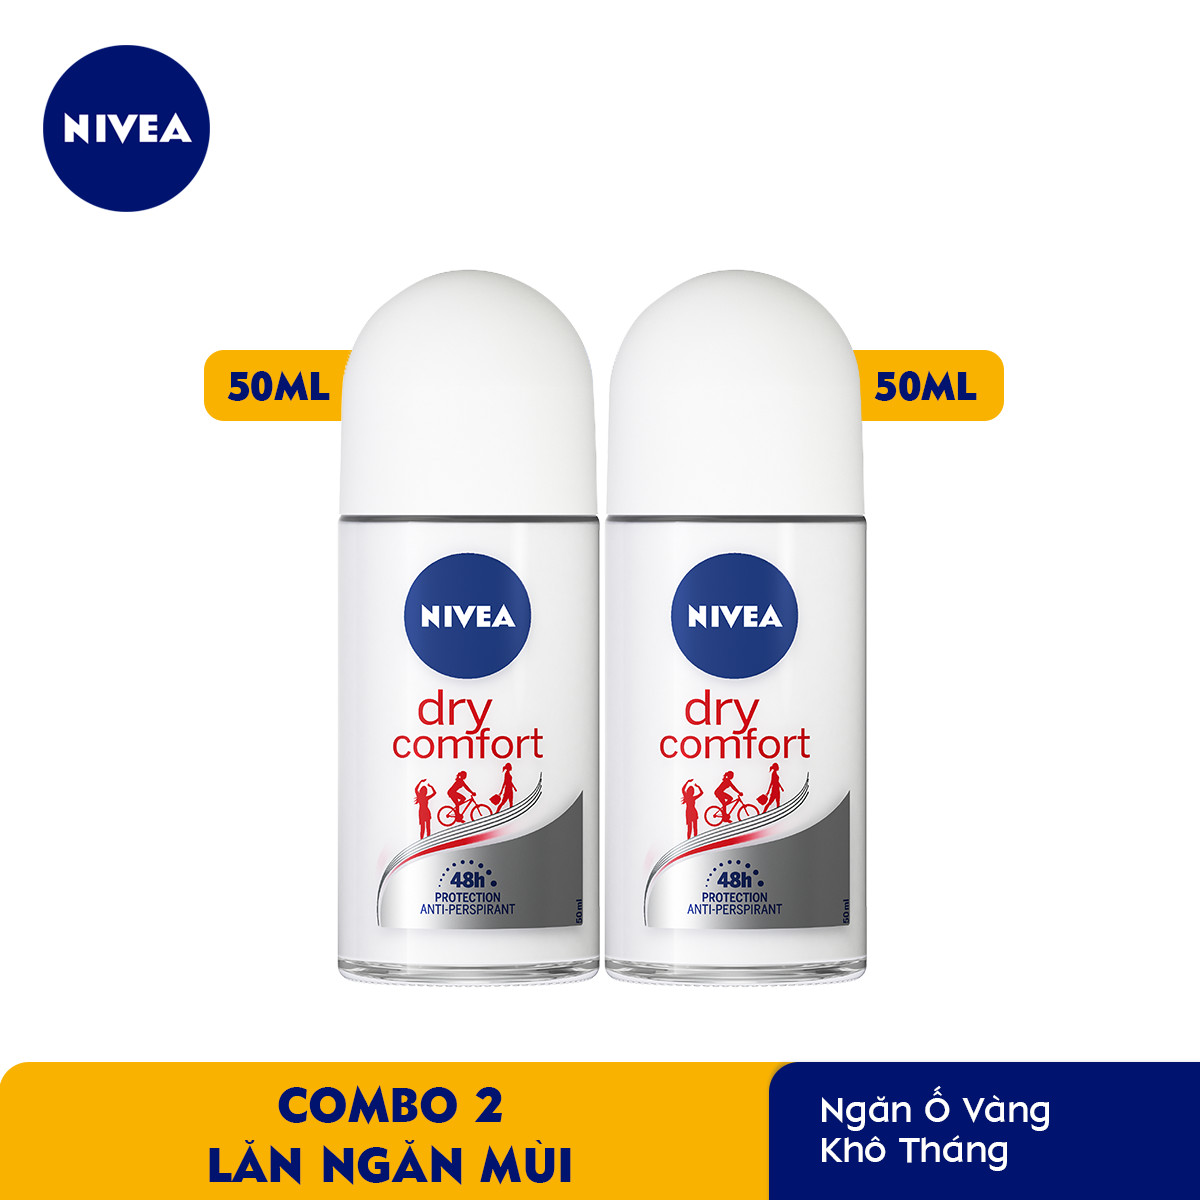 Bộ 2 Lăn Ngăn Mùi NIVEA Dry Comfort Khô Thoáng Mịn Màng (50 ml) - 81611 (Bao bì thay đổi theo từng đợt nhập hàng)